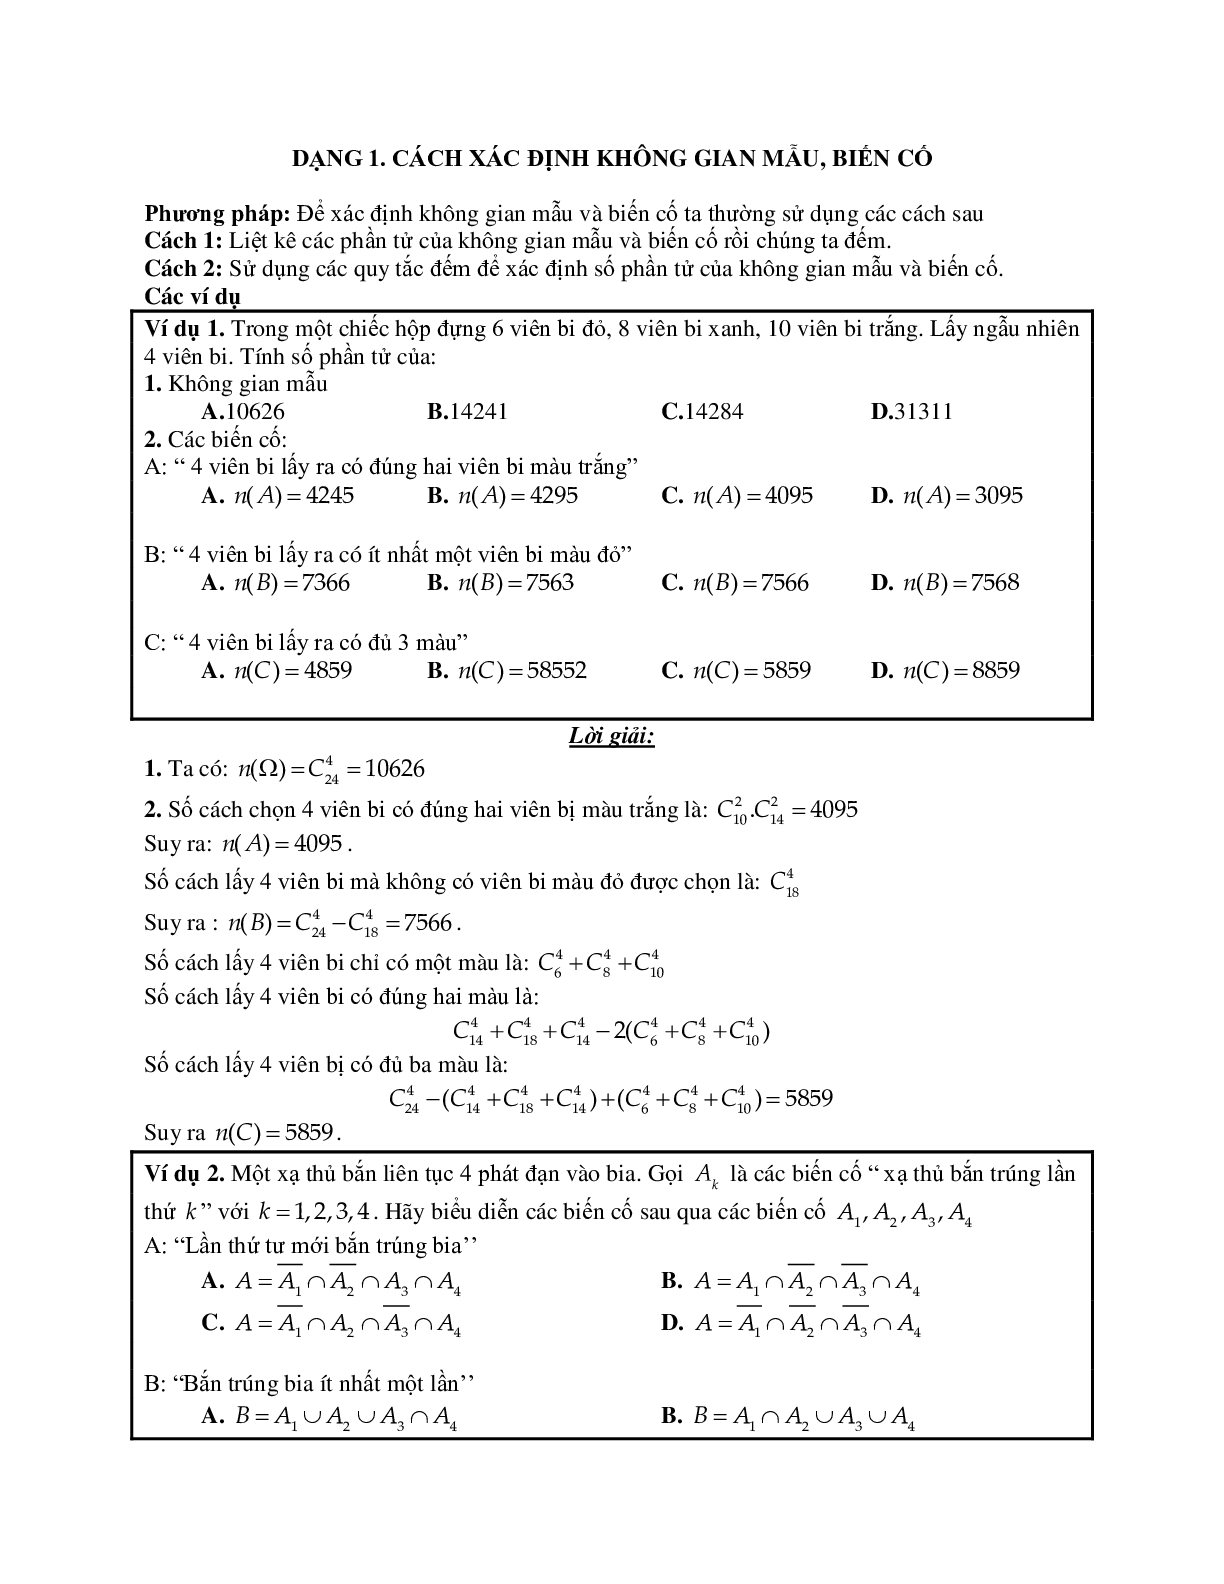 Phương pháp giải và bài tập về Cách xác định không gian mẫu, biến cố (trang 1)